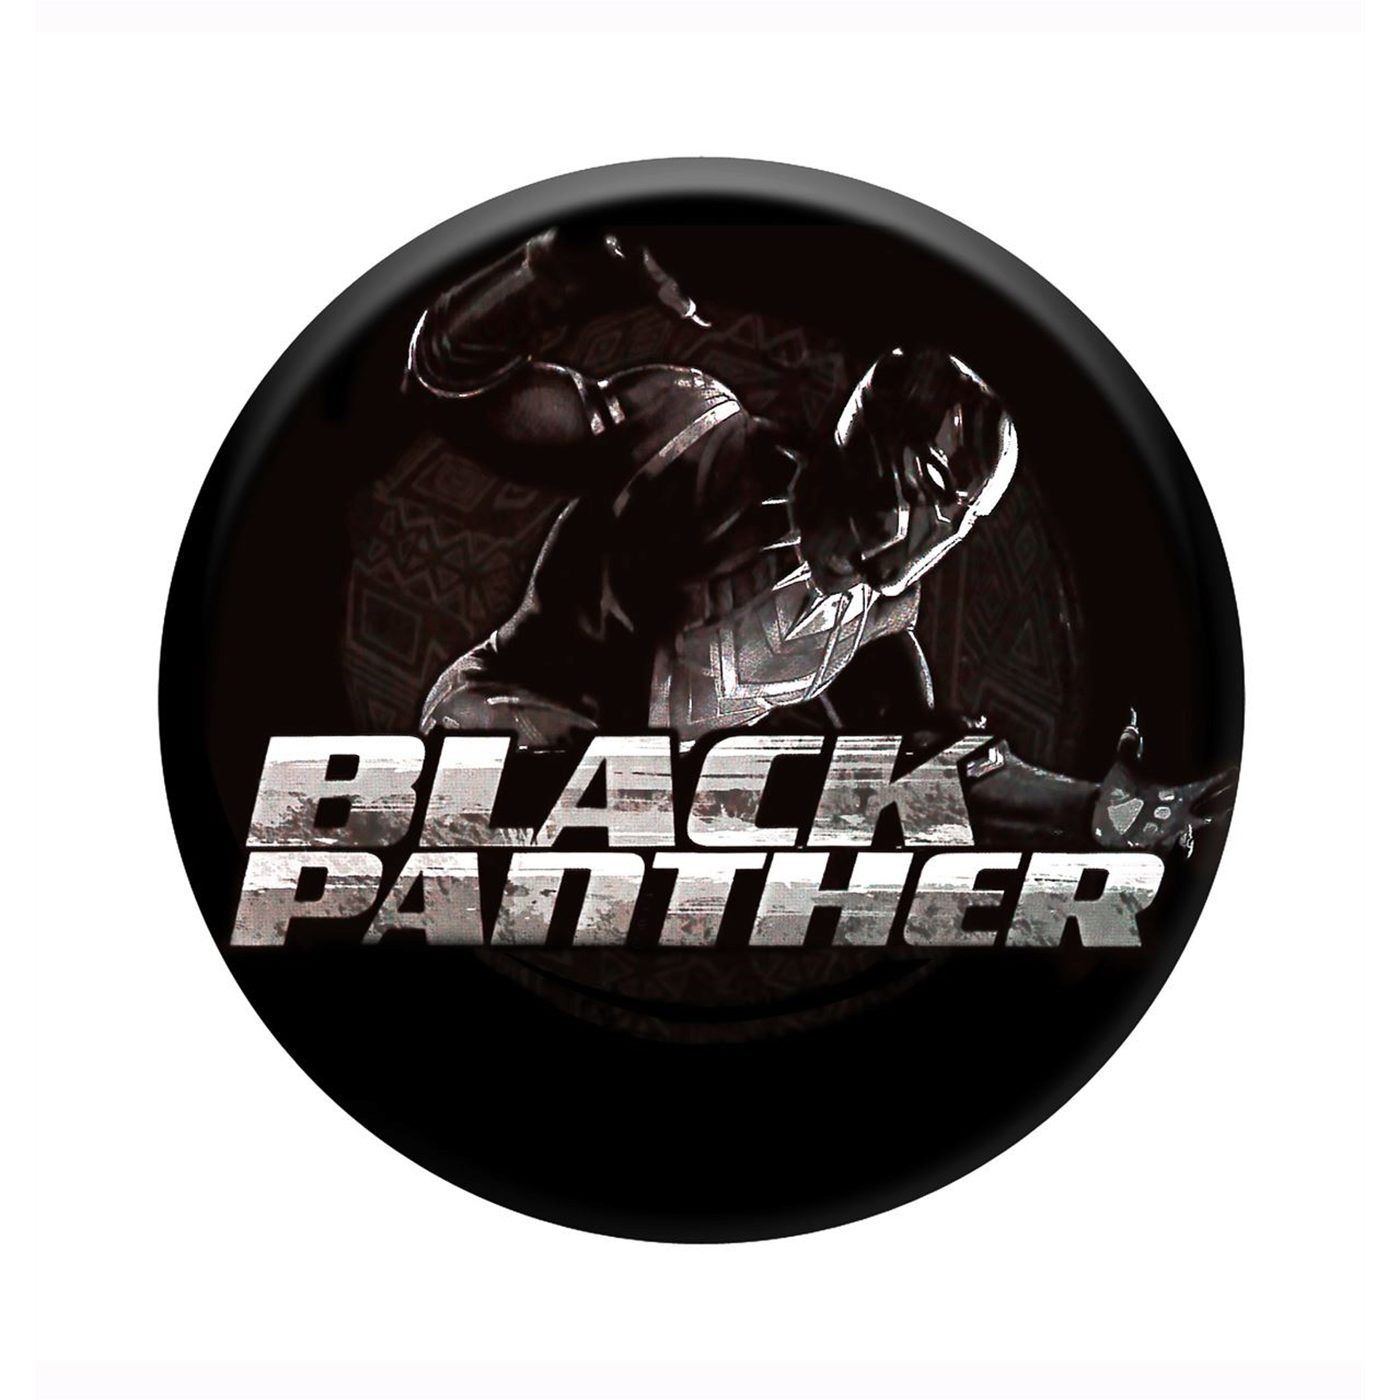 Civil War Black Panther Image Button